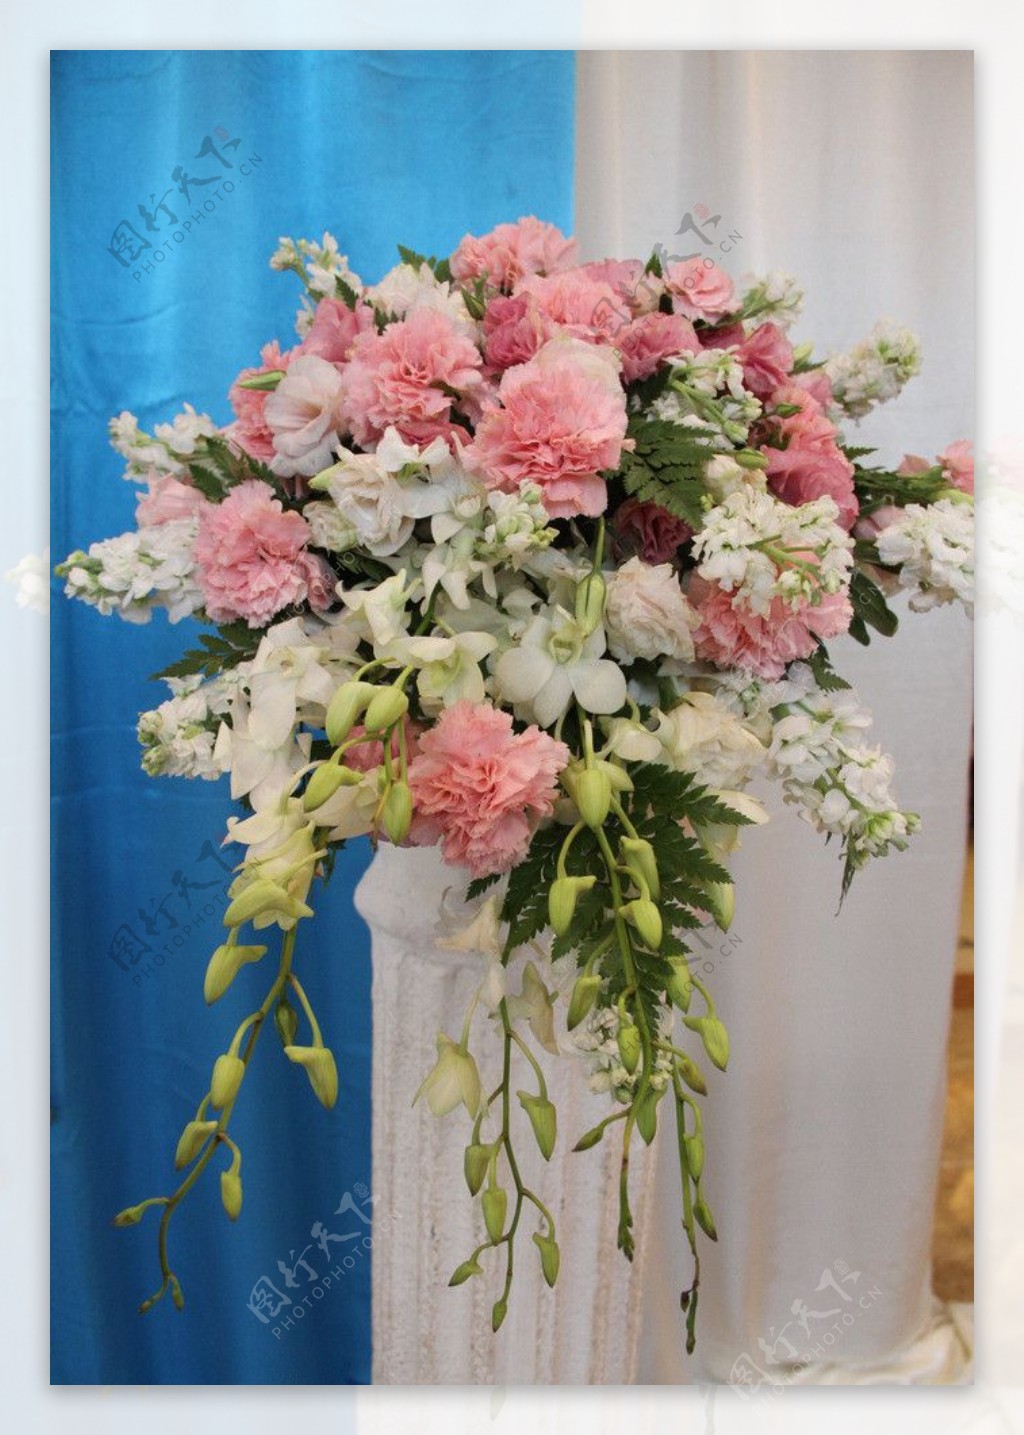 婚礼鲜花及布景展示图片